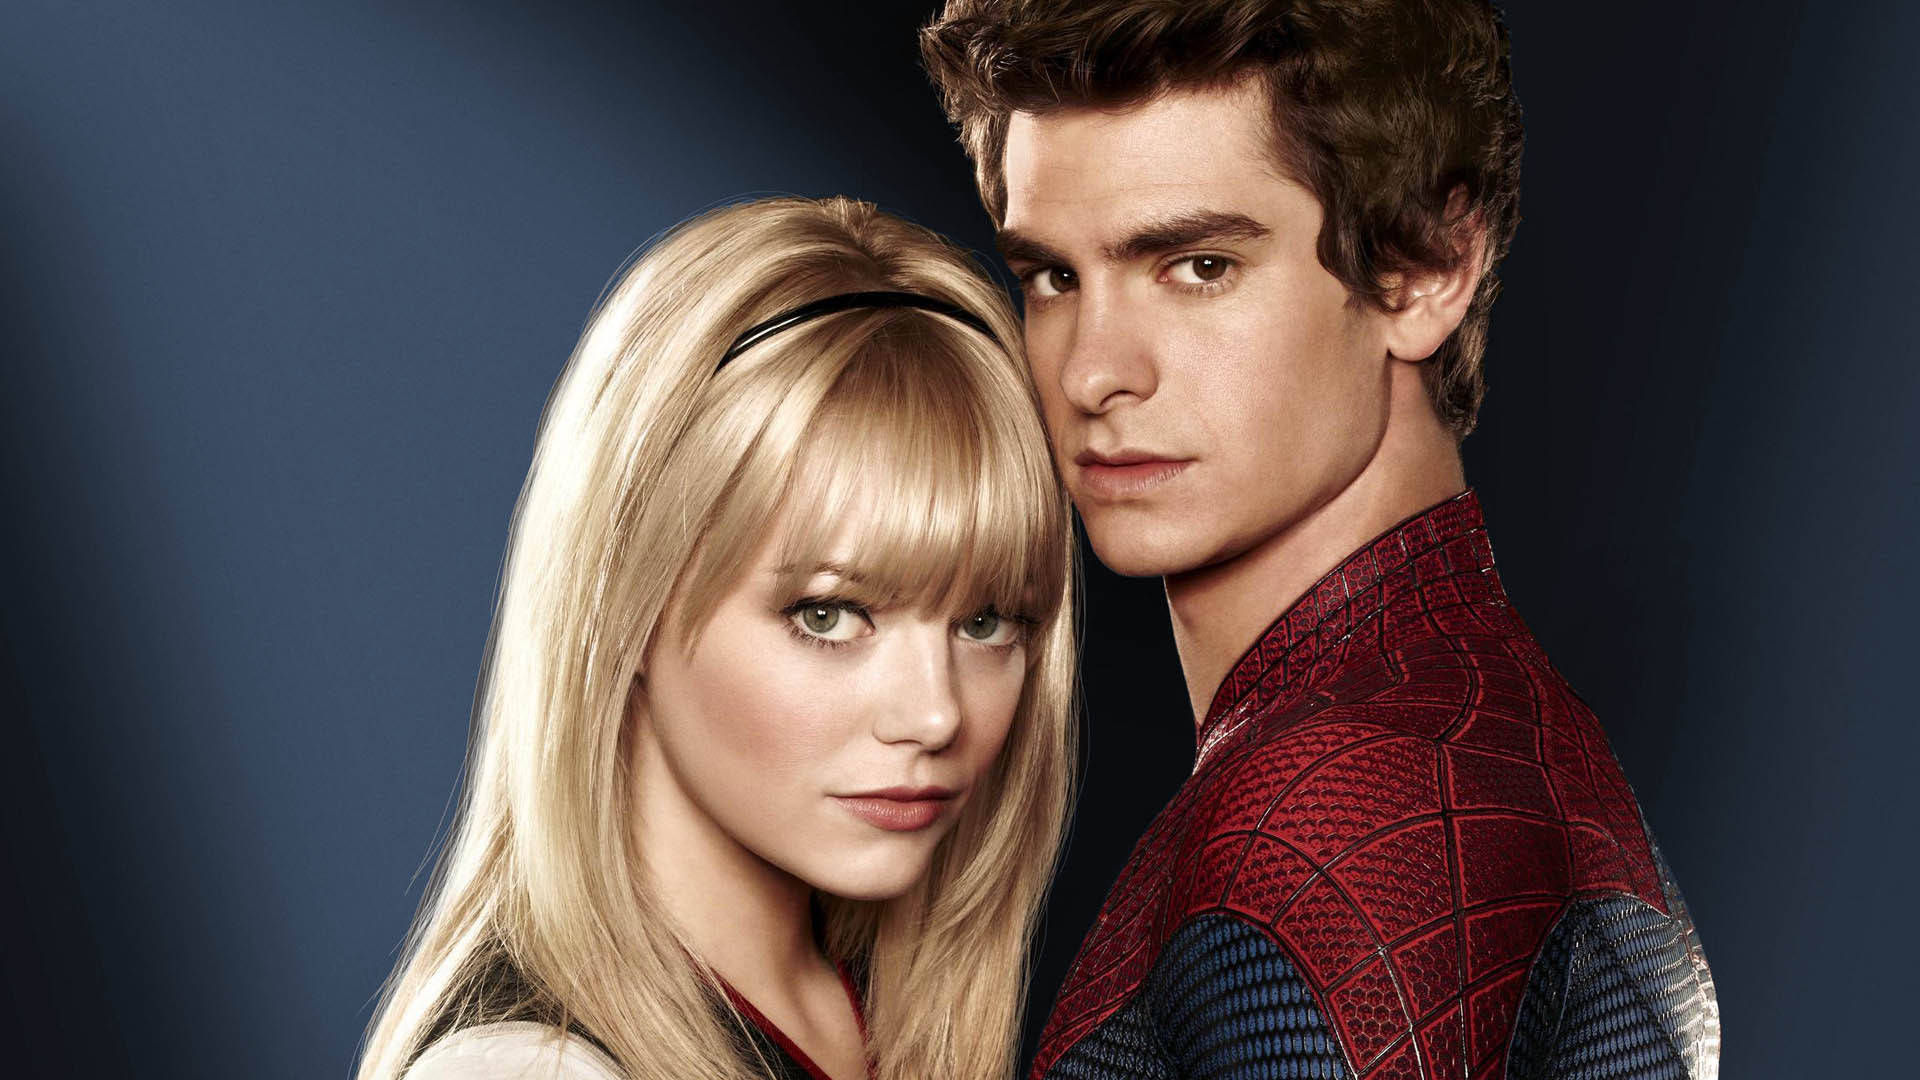 Andrew Garfield Spider-man Love Interest